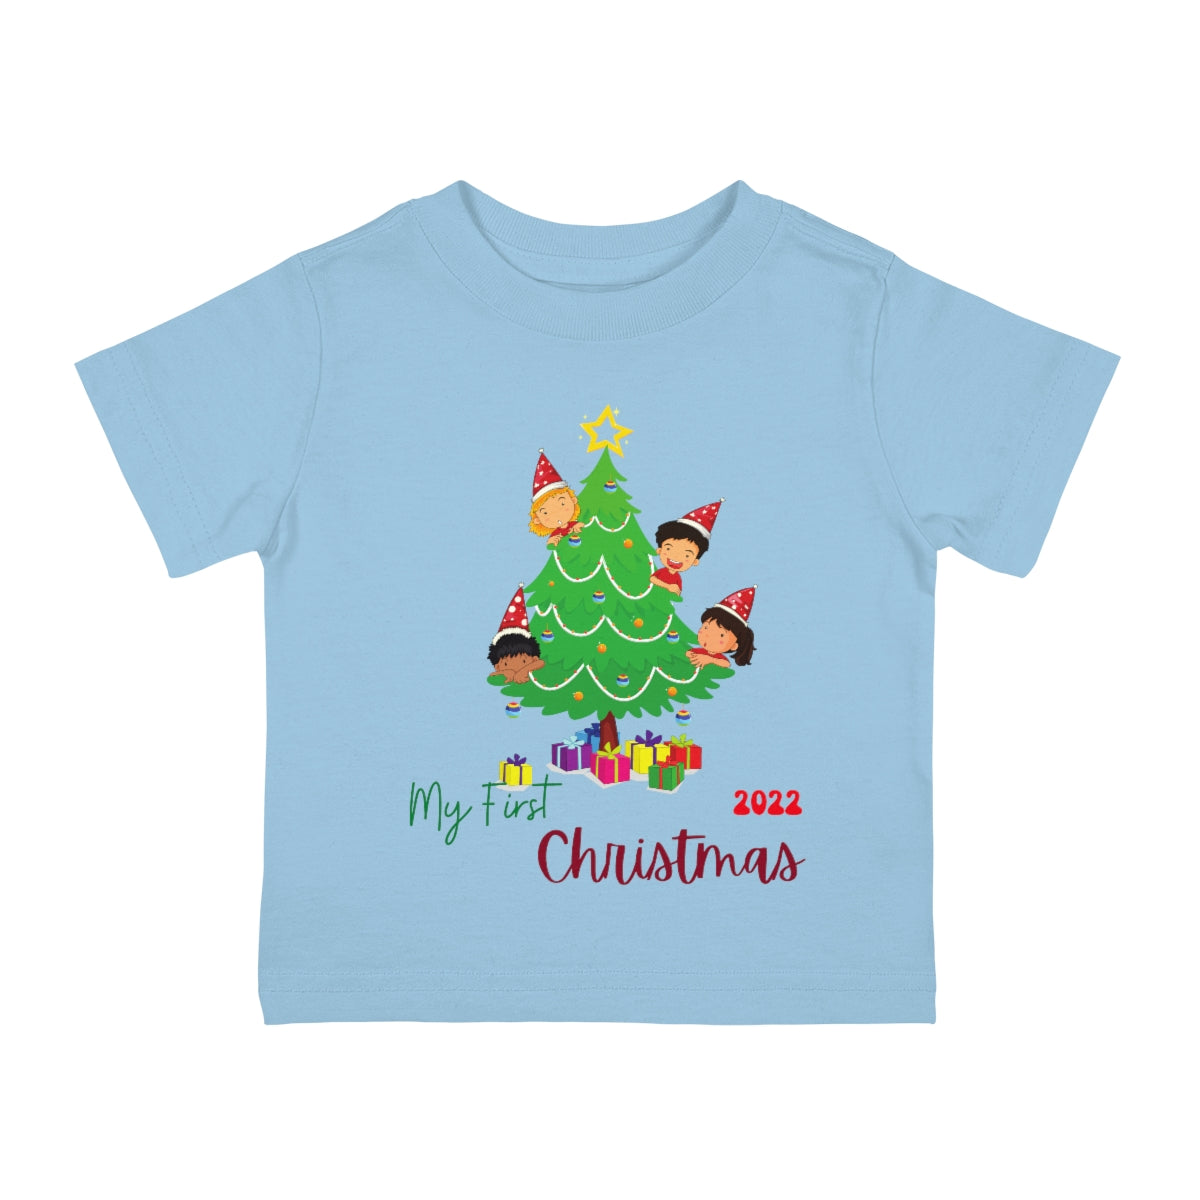 My first Christmas Christmas Tree Tee, Baby Tee, Infant Tee, Christmas Baby Tee